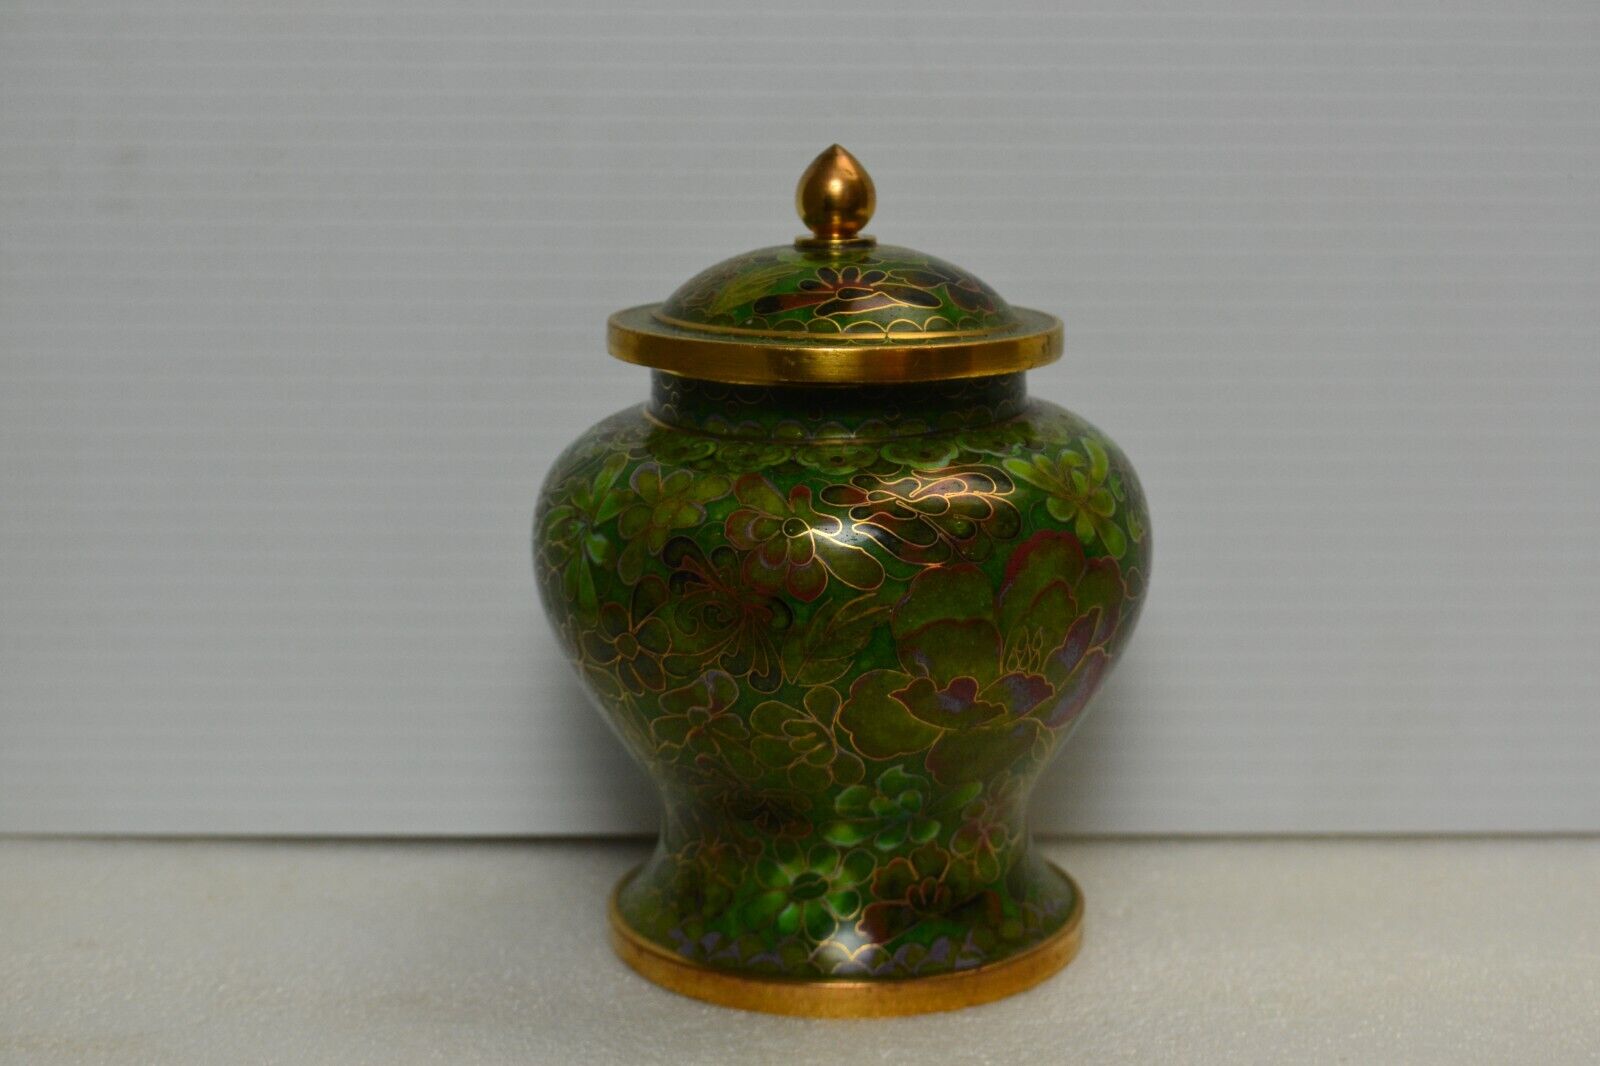 Cloisonne jar vintage Floral / gold trim design, Chinese with lid